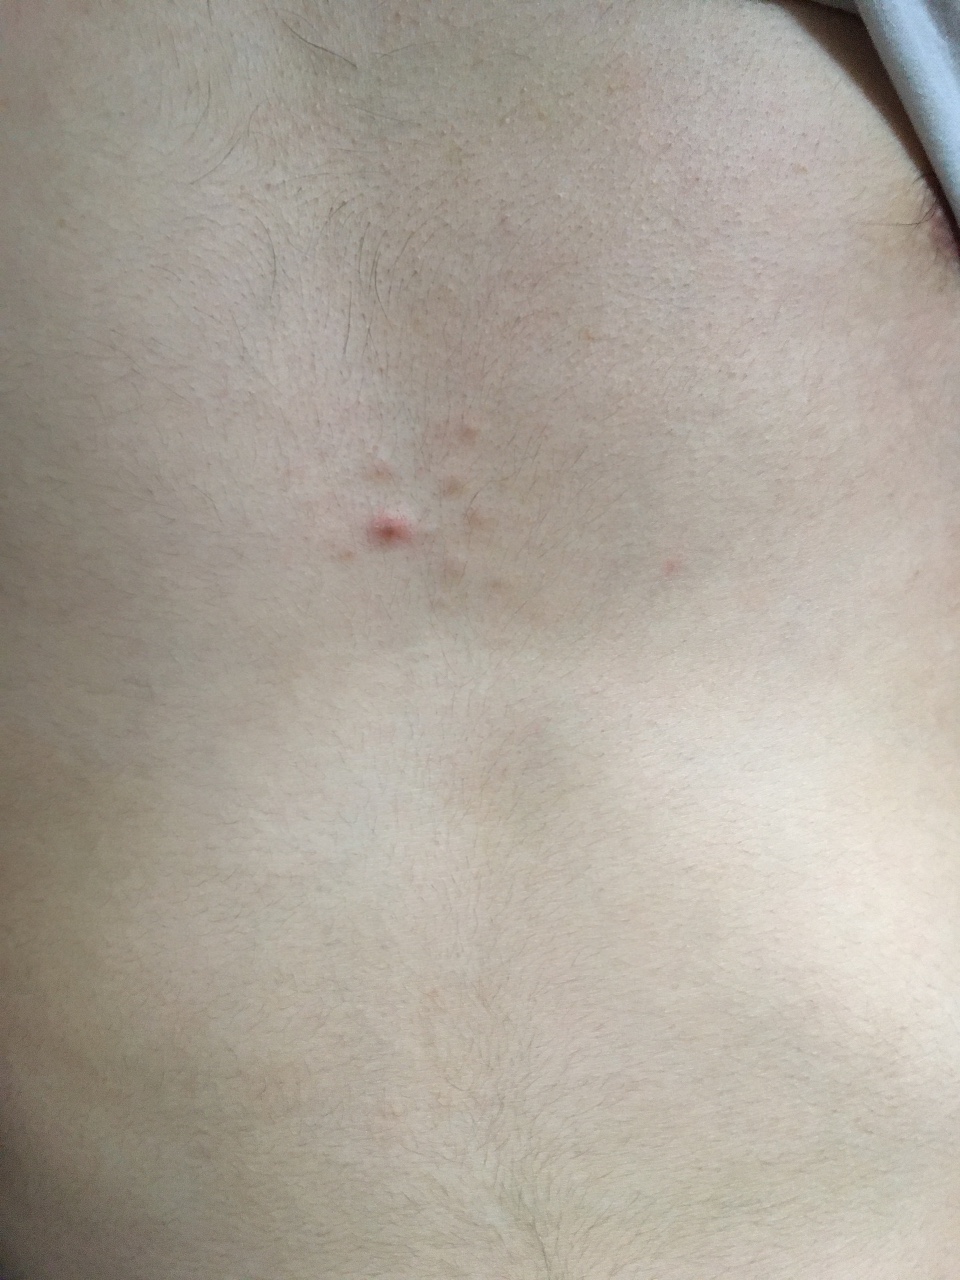 небольшое уплотнение у мужчин в груди фото 48